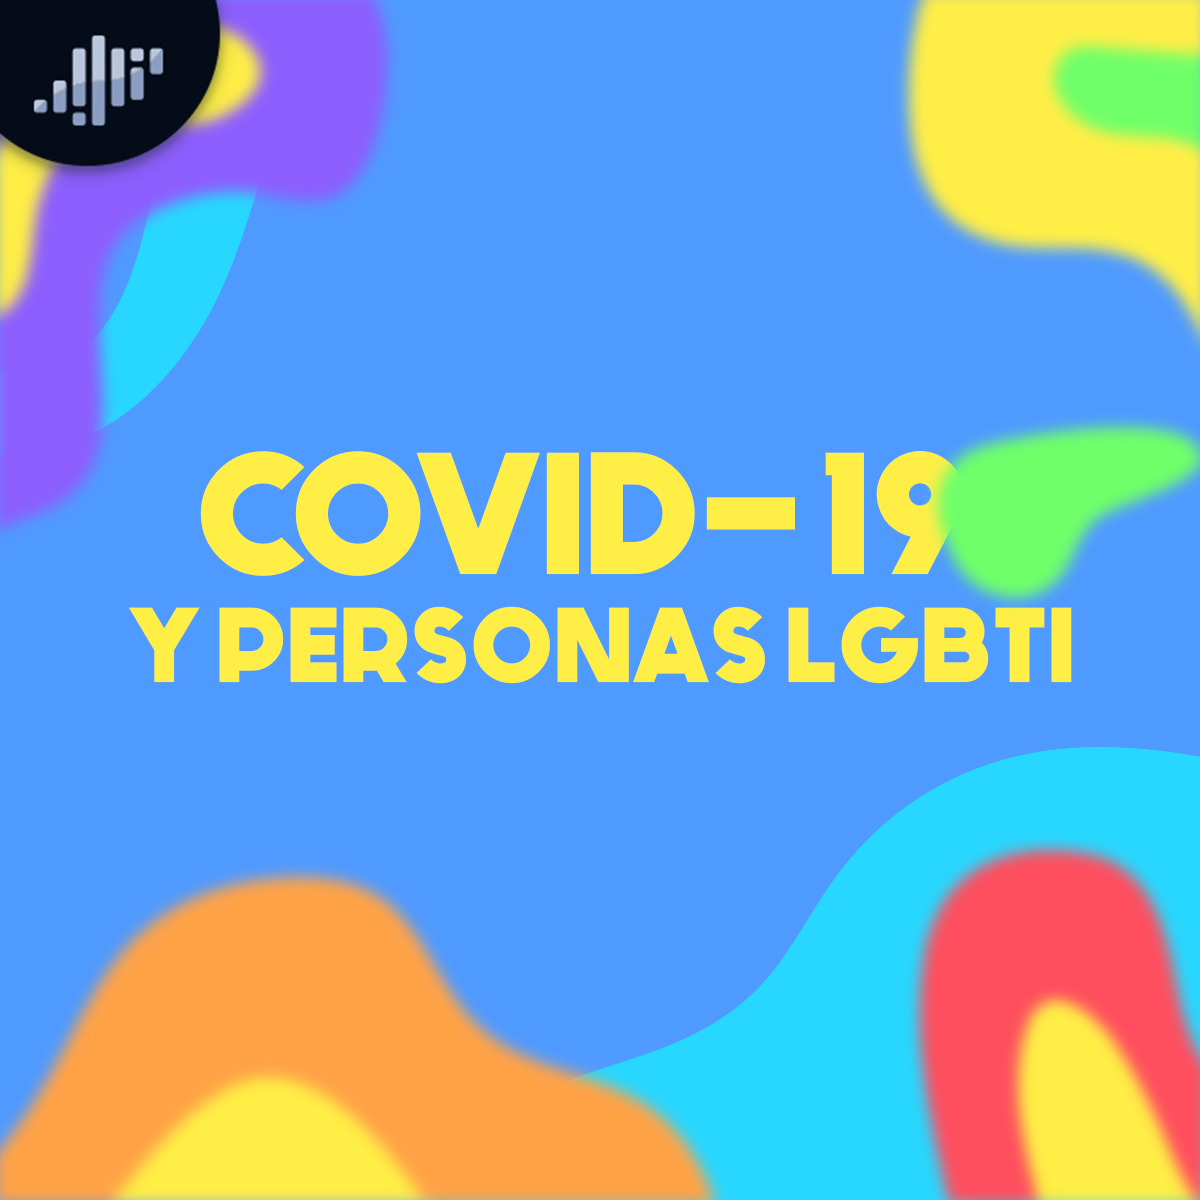 Covid 19 y personas LGBTI